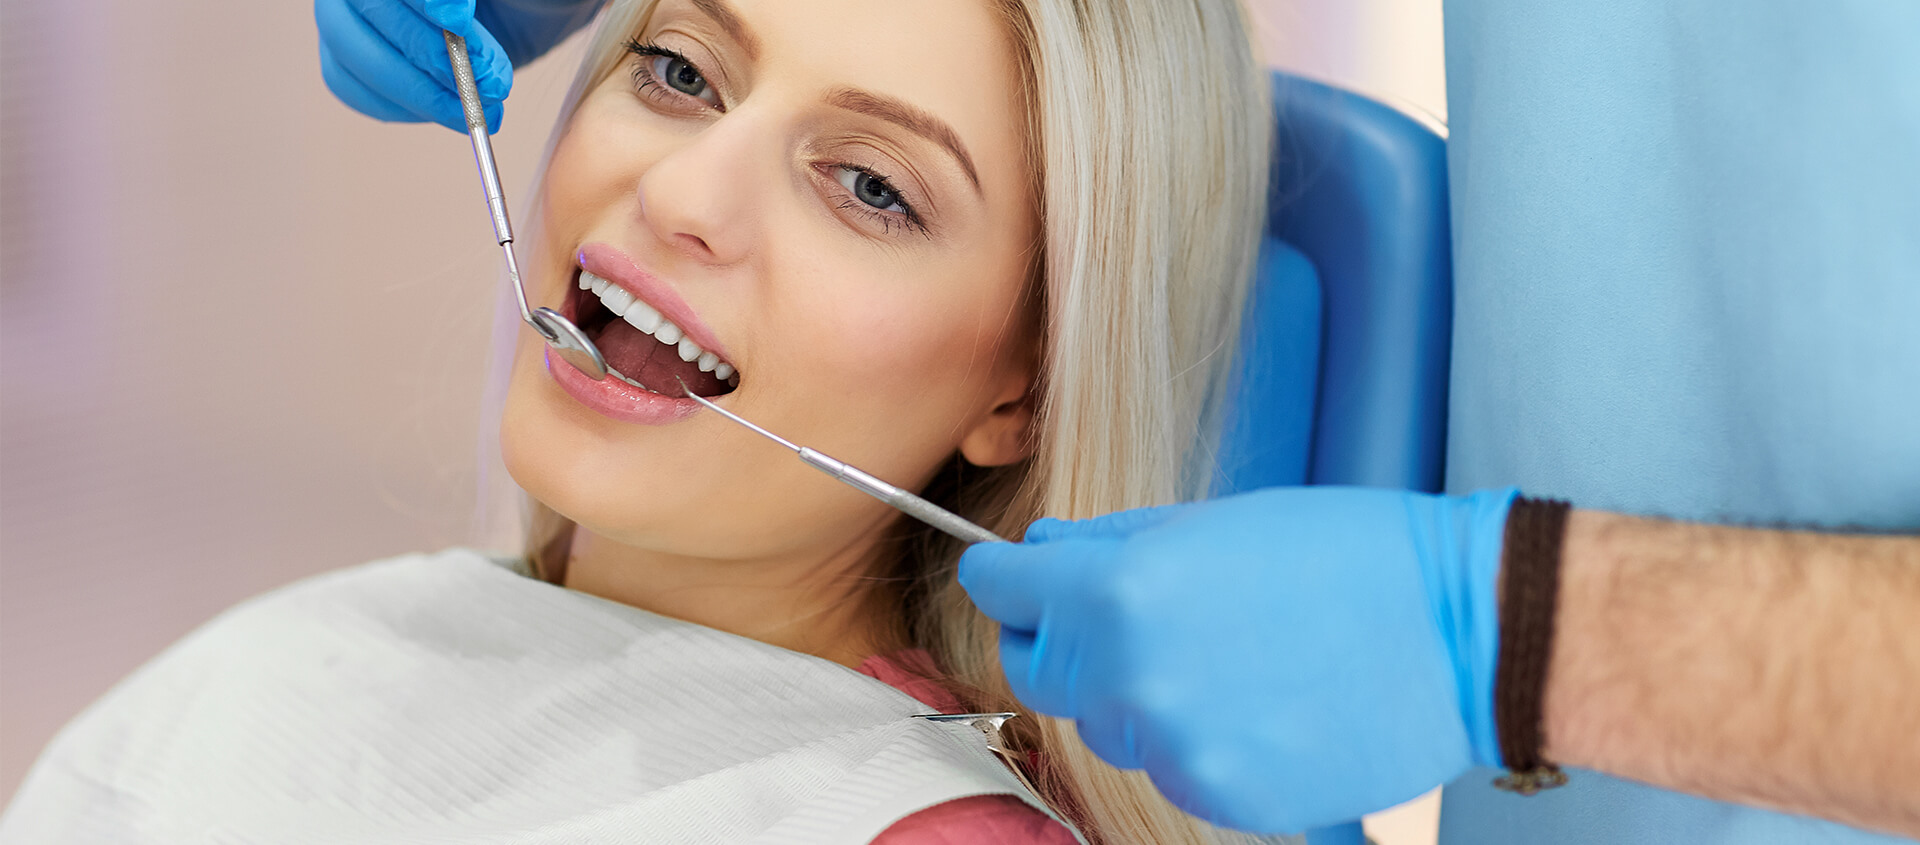 Dental Bonding Benefits for Tooth Repair - Perkins Dental Care